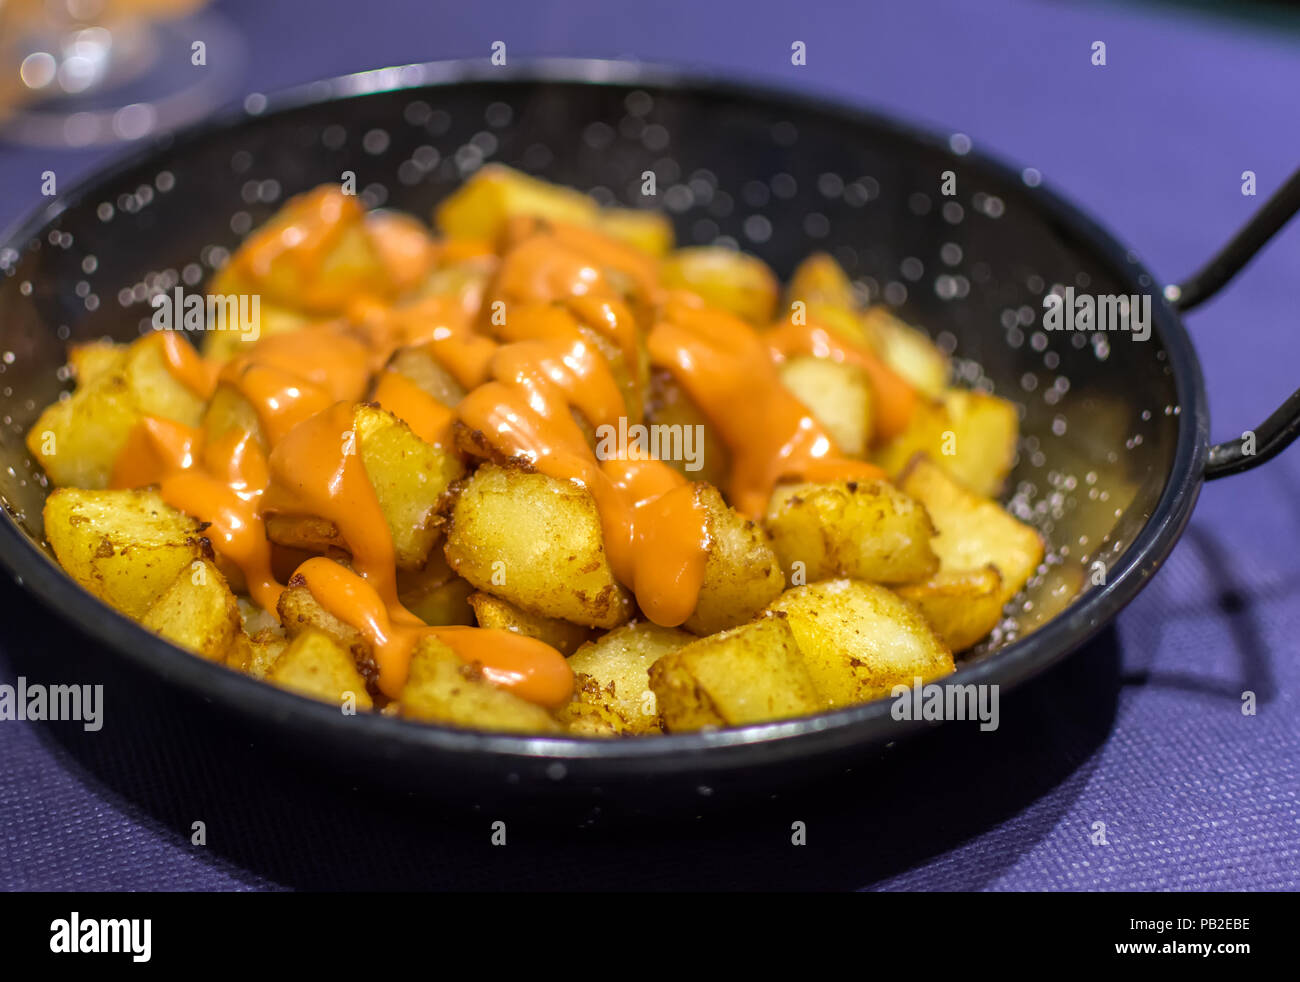 Patatas bravas (pommes de terre) avec l'espagnol de couleur orange épicé (salsa brava brava sauce) ou alioli (aïoli). Patatas Bravas est un classique et très po Banque D'Images